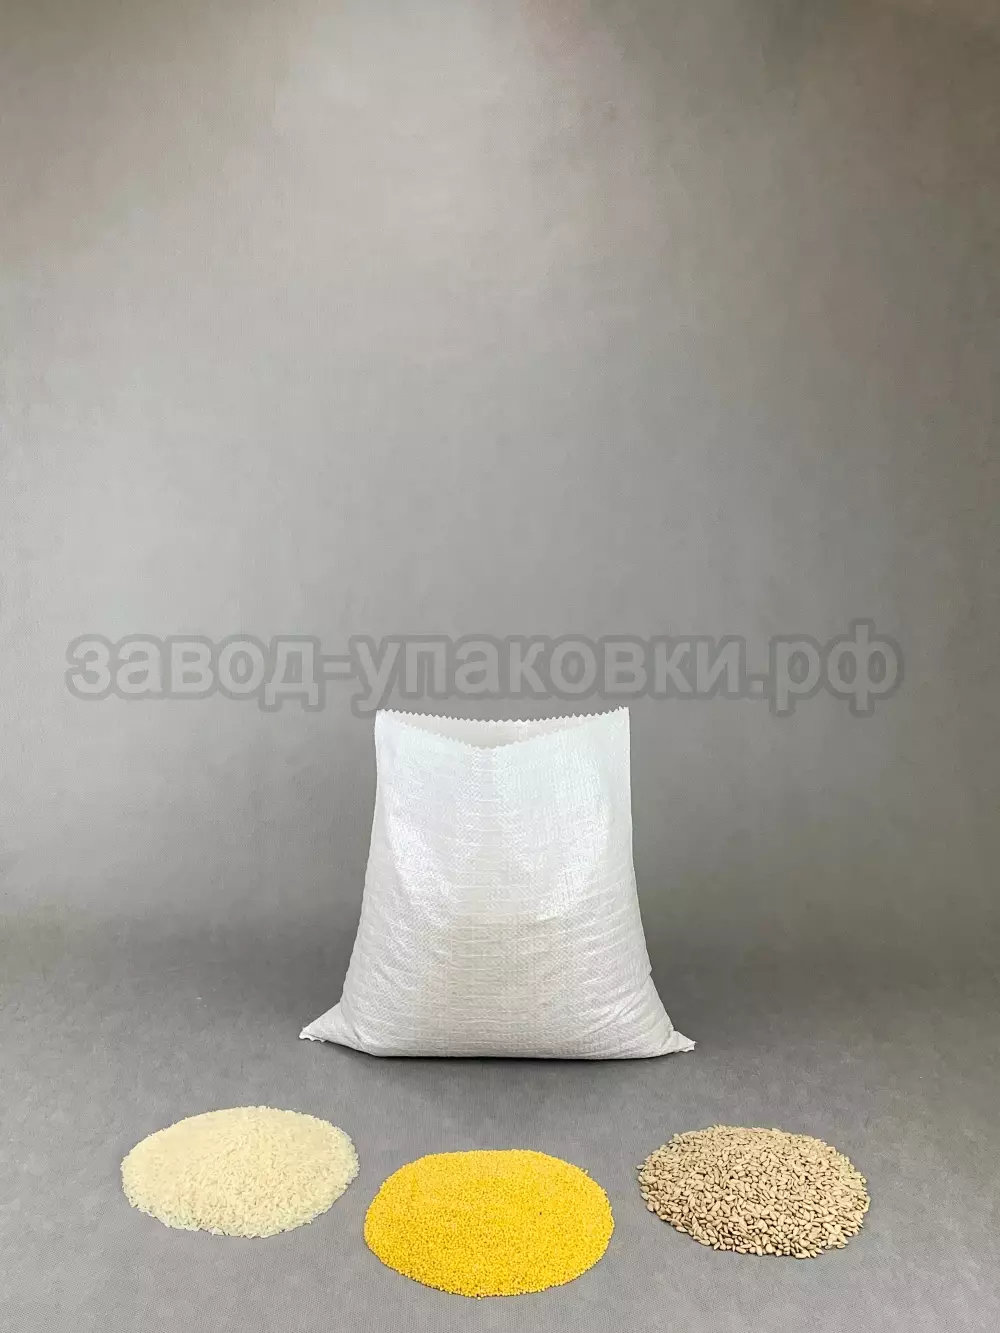 Мешки полипропиленовые плотные 40x40 см на 3-5 кг